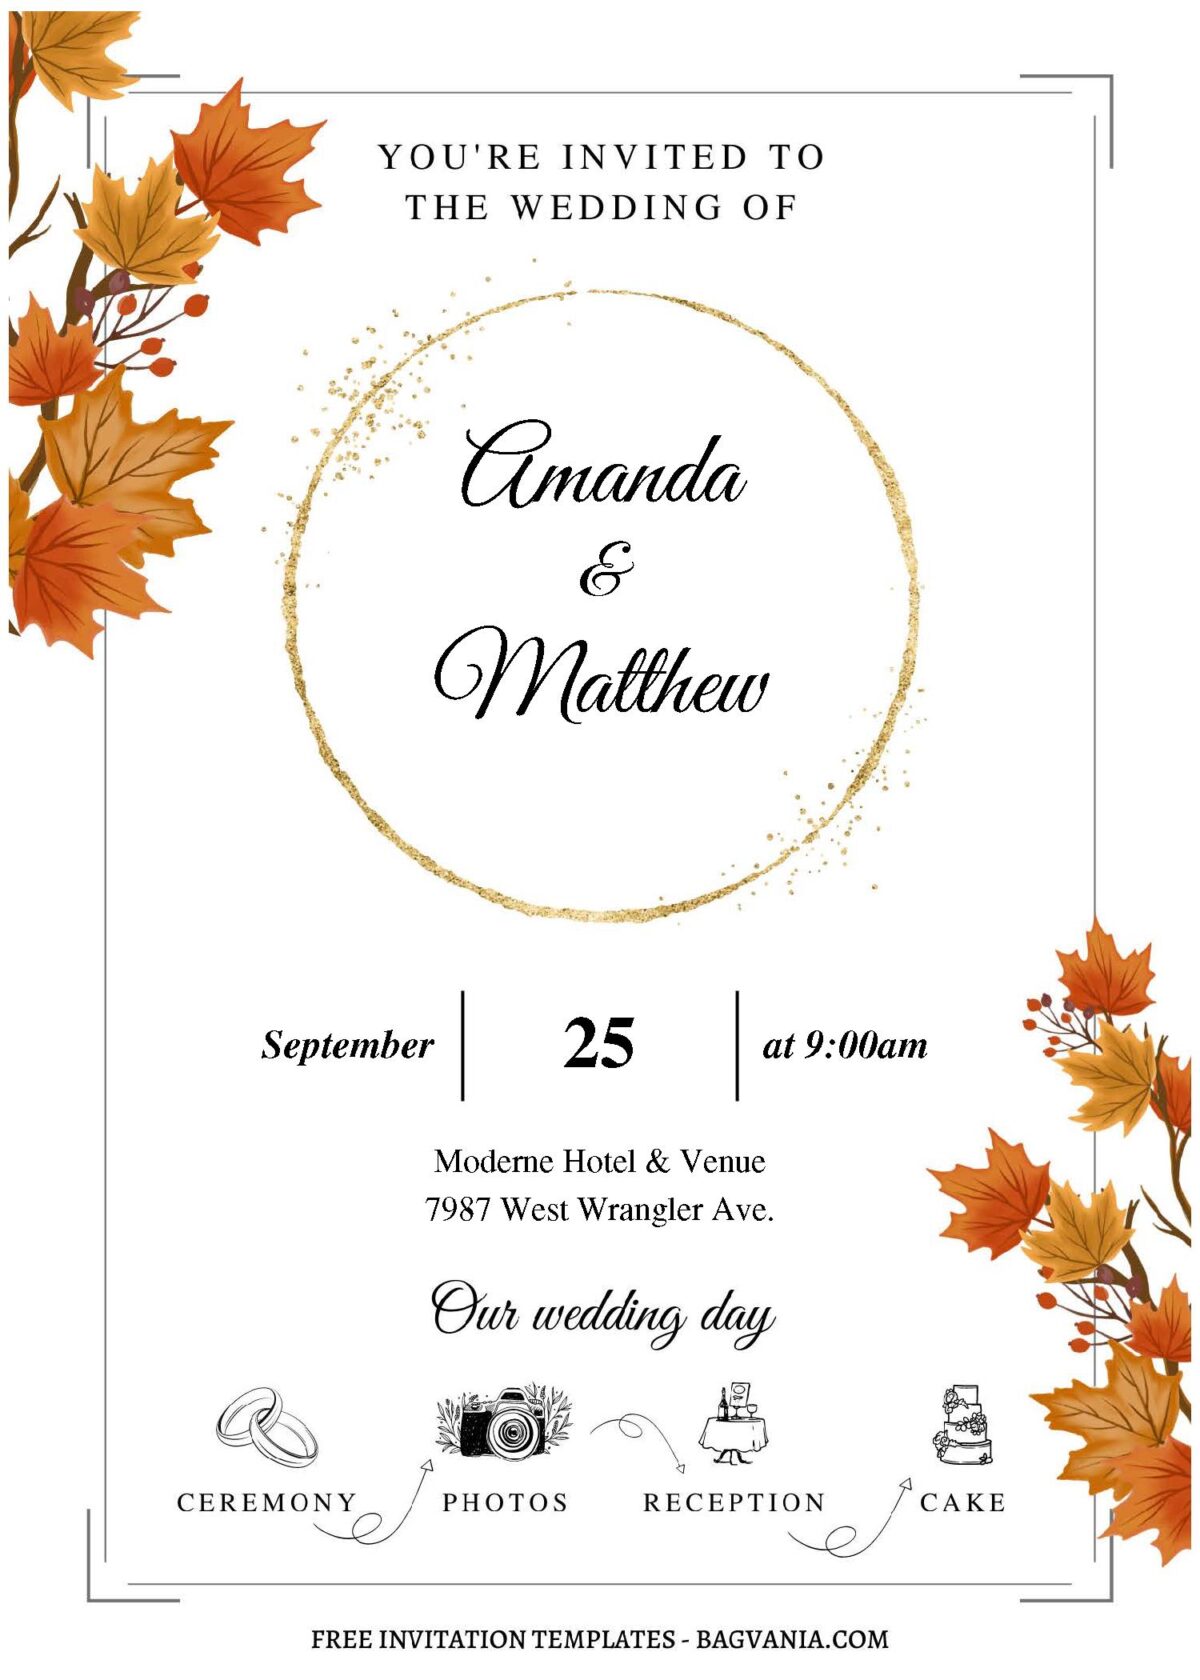 (Free Editable PDF) Wonderful Autumn Wedding Invitation Templates C